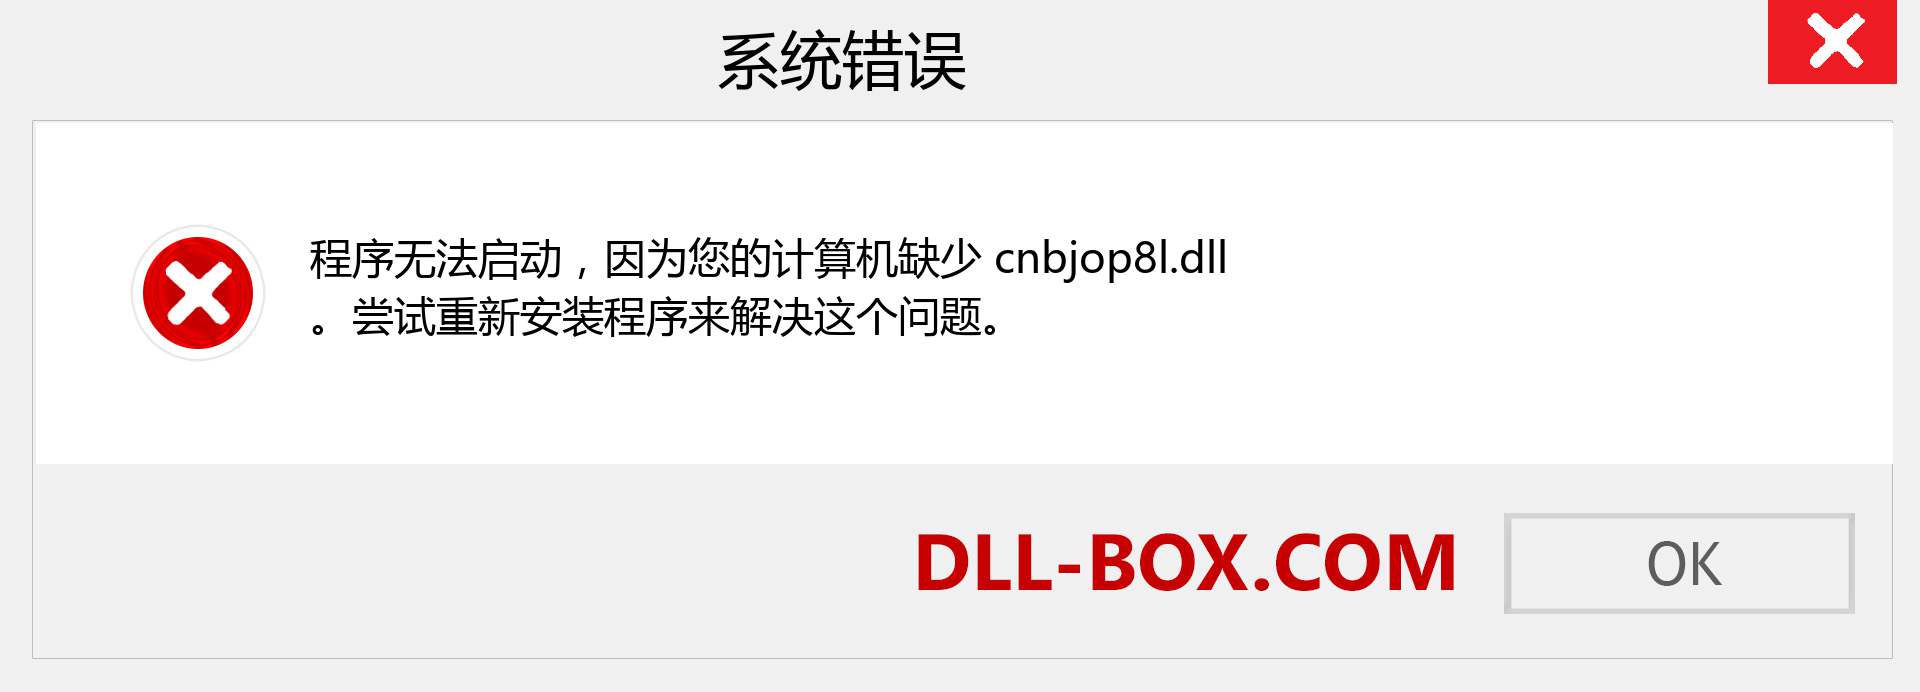 cnbjop8l.dll 文件丢失？。 适用于 Windows 7、8、10 的下载 - 修复 Windows、照片、图像上的 cnbjop8l dll 丢失错误